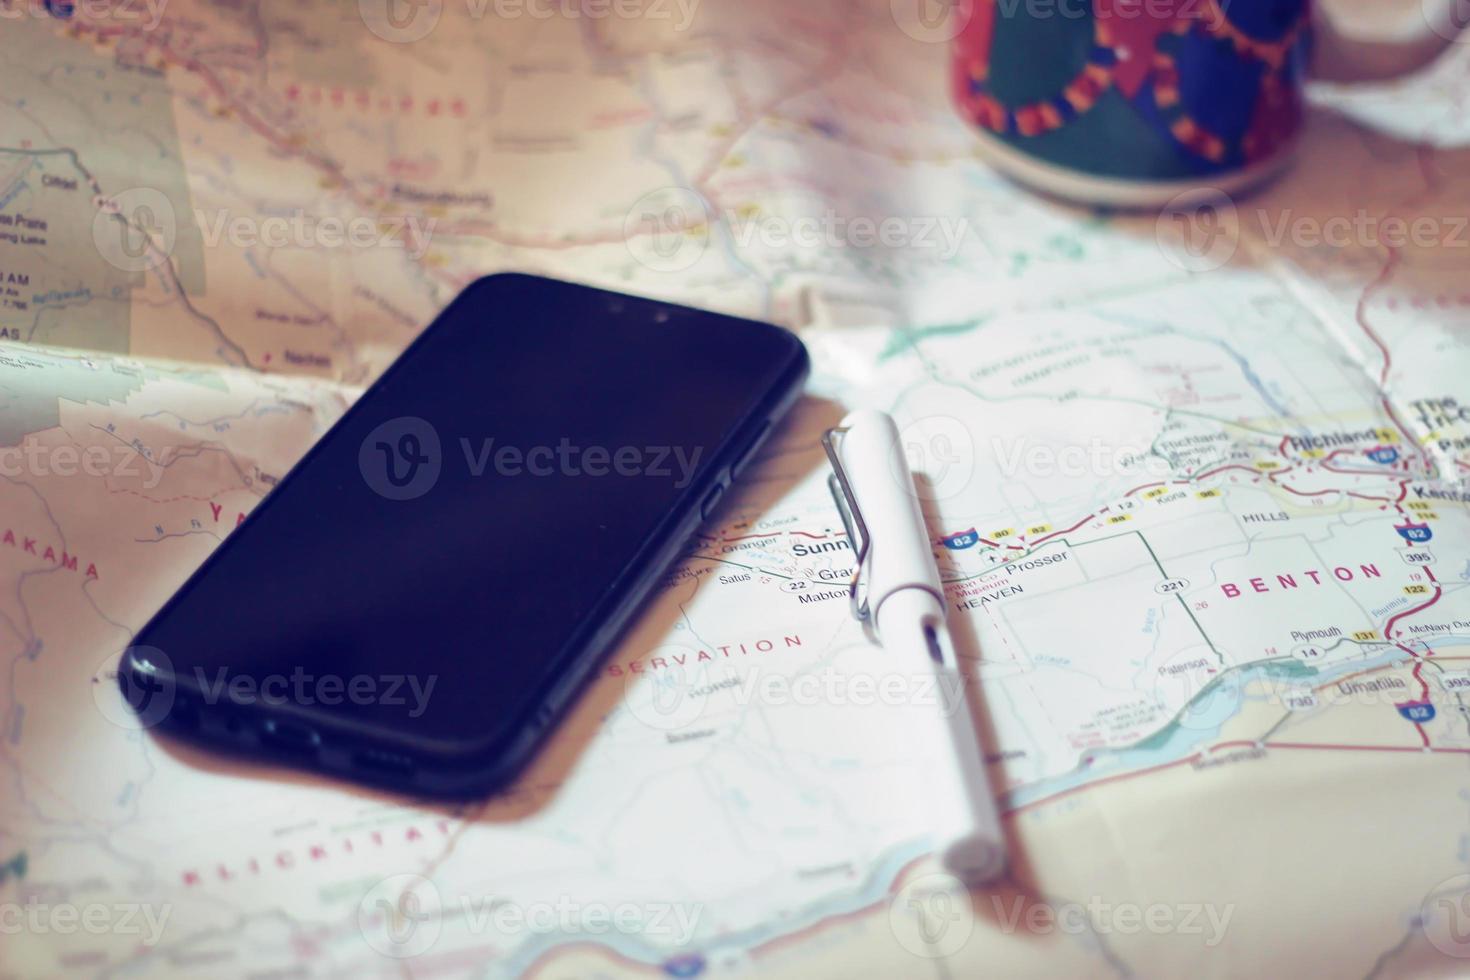 mapa, mapa do estado de Washington, caneta, óculos, telefone celular, xícara de café em cima da mesa. foto